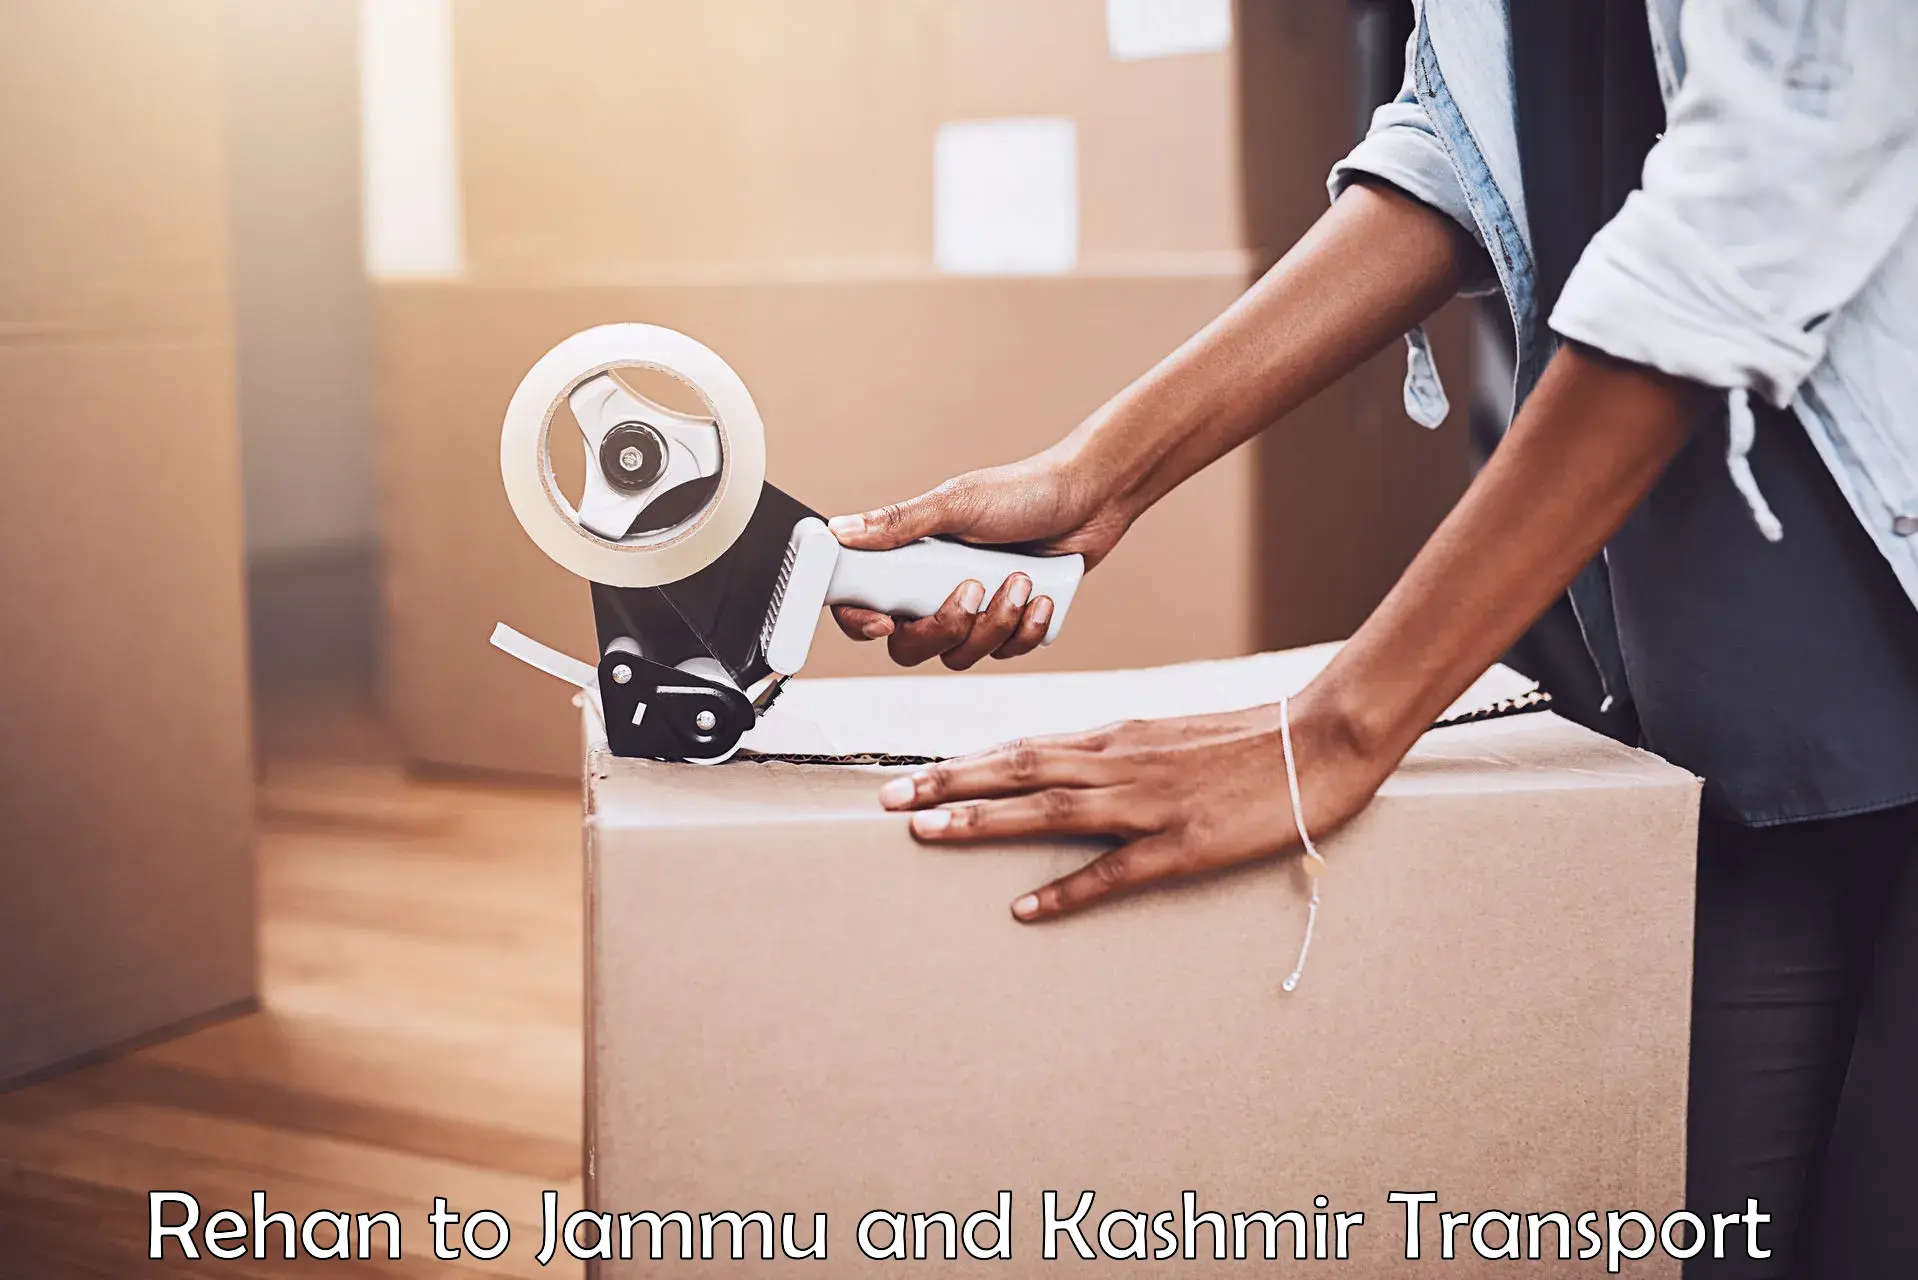 Shipping partner Rehan to Jammu and Kashmir